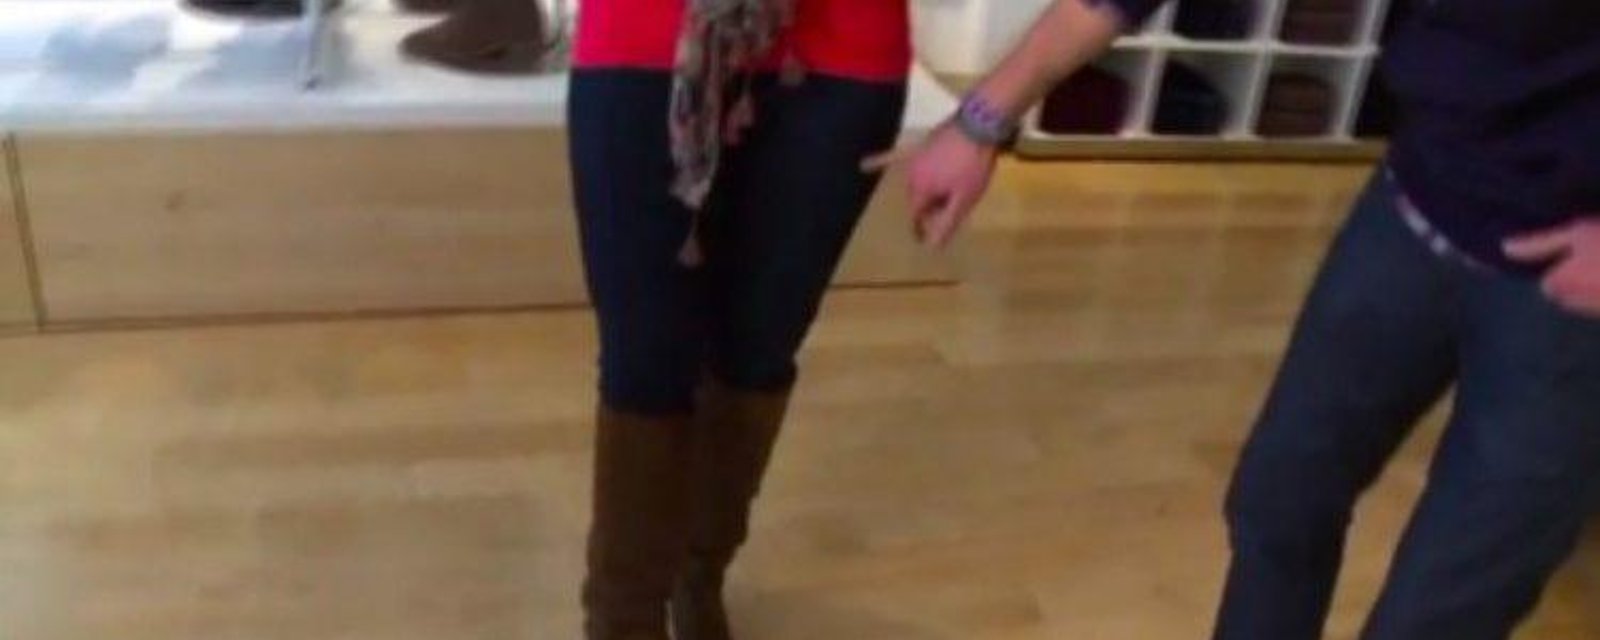 Une femme termine sa journée aux urgences après avoir porté un jean skinny